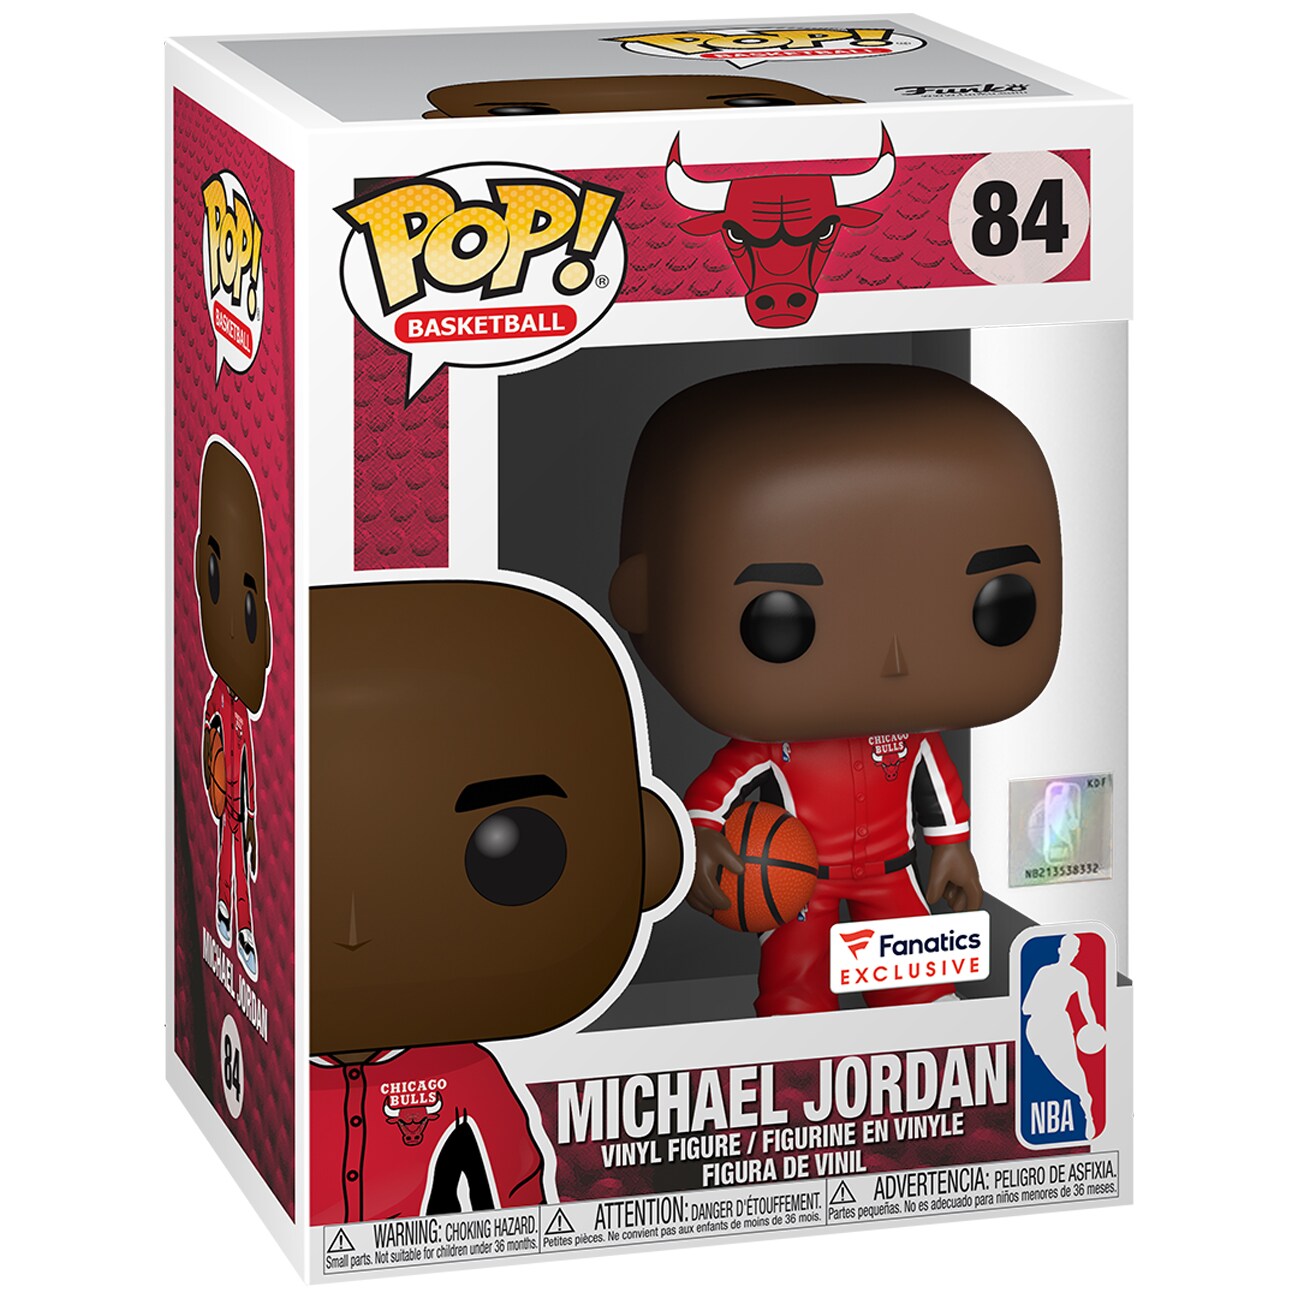 Funko Pop! Basketball NBA Michael Jordan (Bulls Warmups) Fanatics